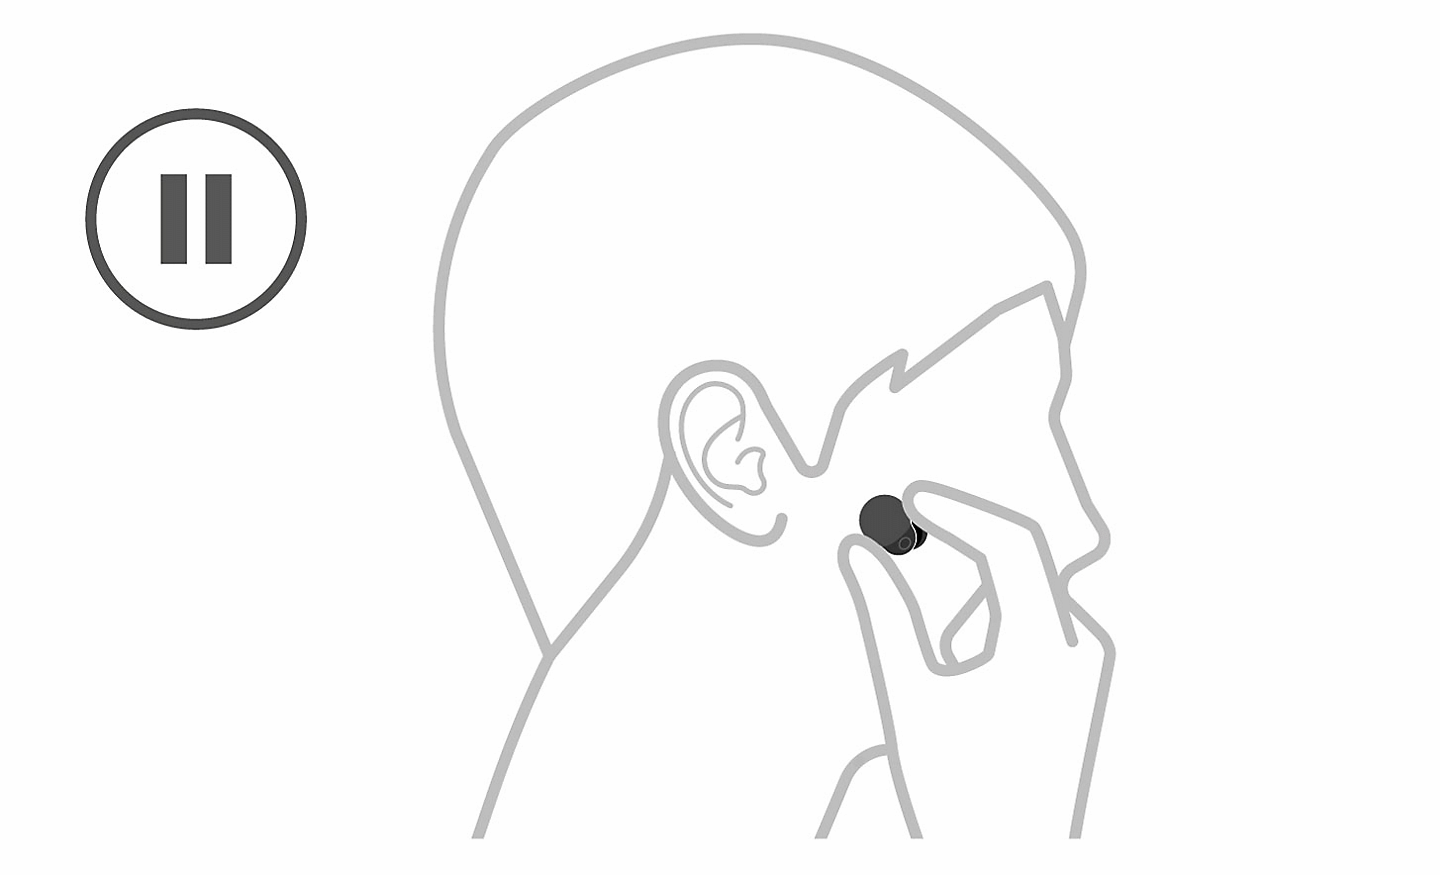 Ilustracija glave, lijevo se nalazi ikona pauze i ruka koja uklanja slušalicu iz uha